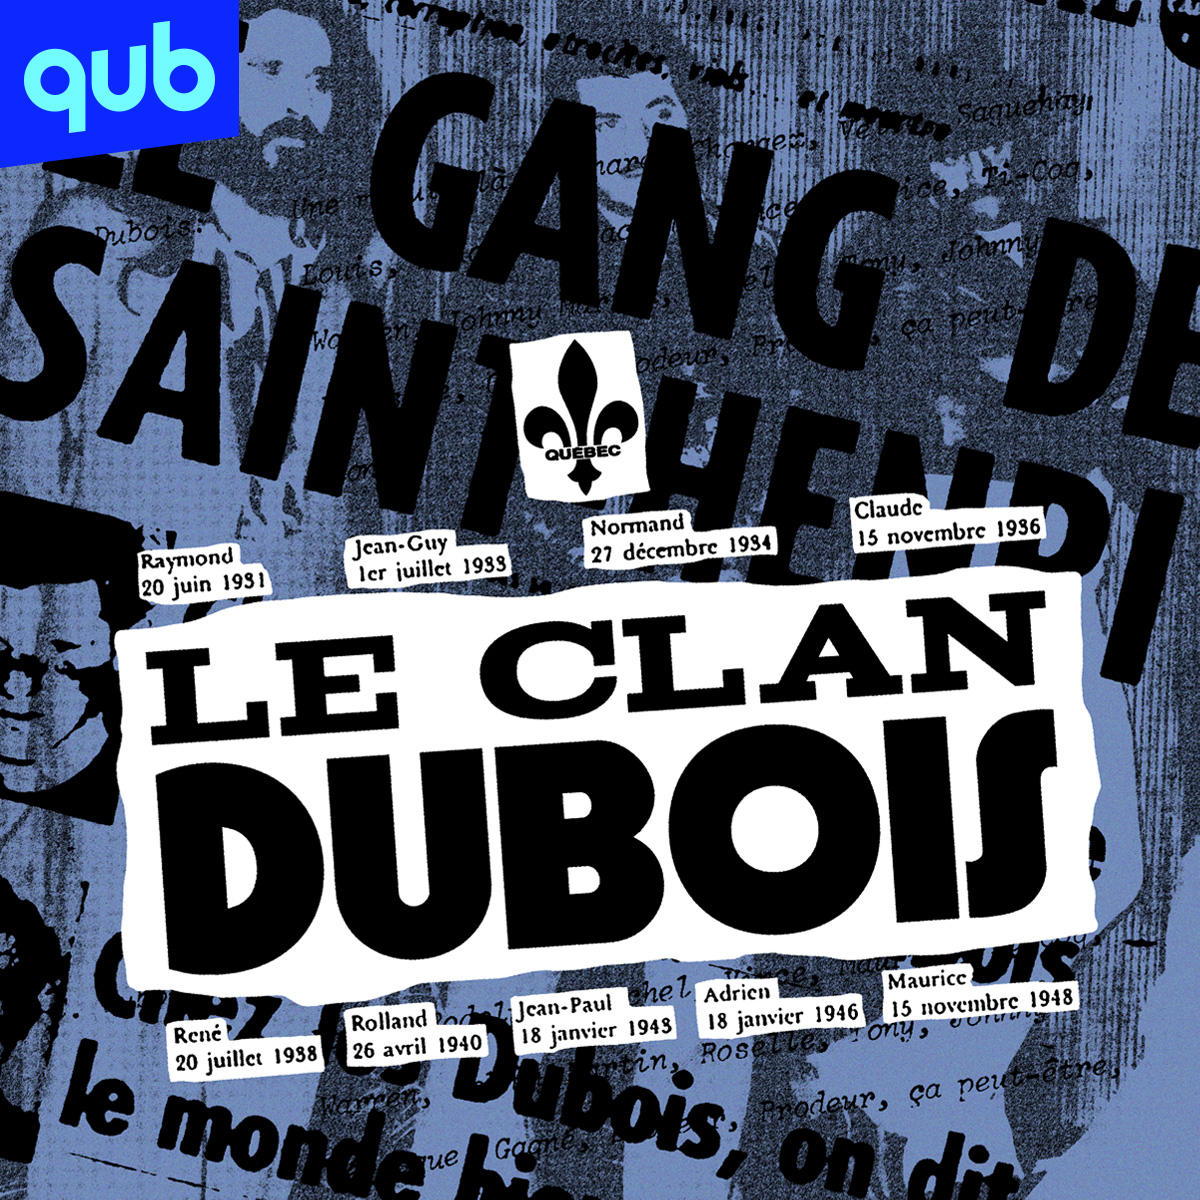 Le Clan Dubois - Bande-annonce